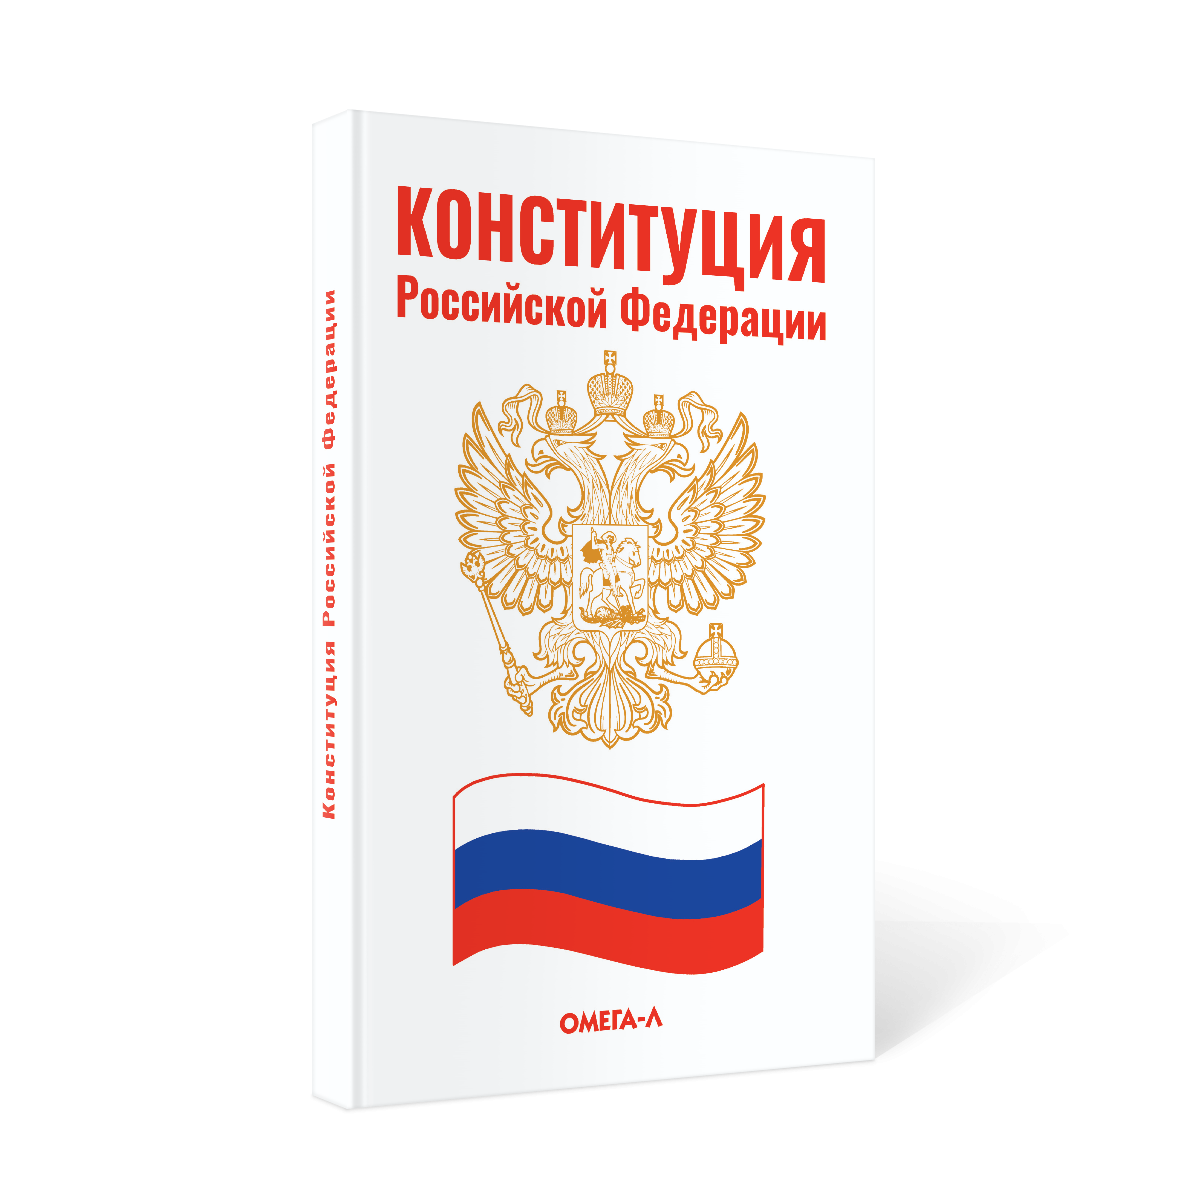 фото Книга конституция российской федерации омега-л